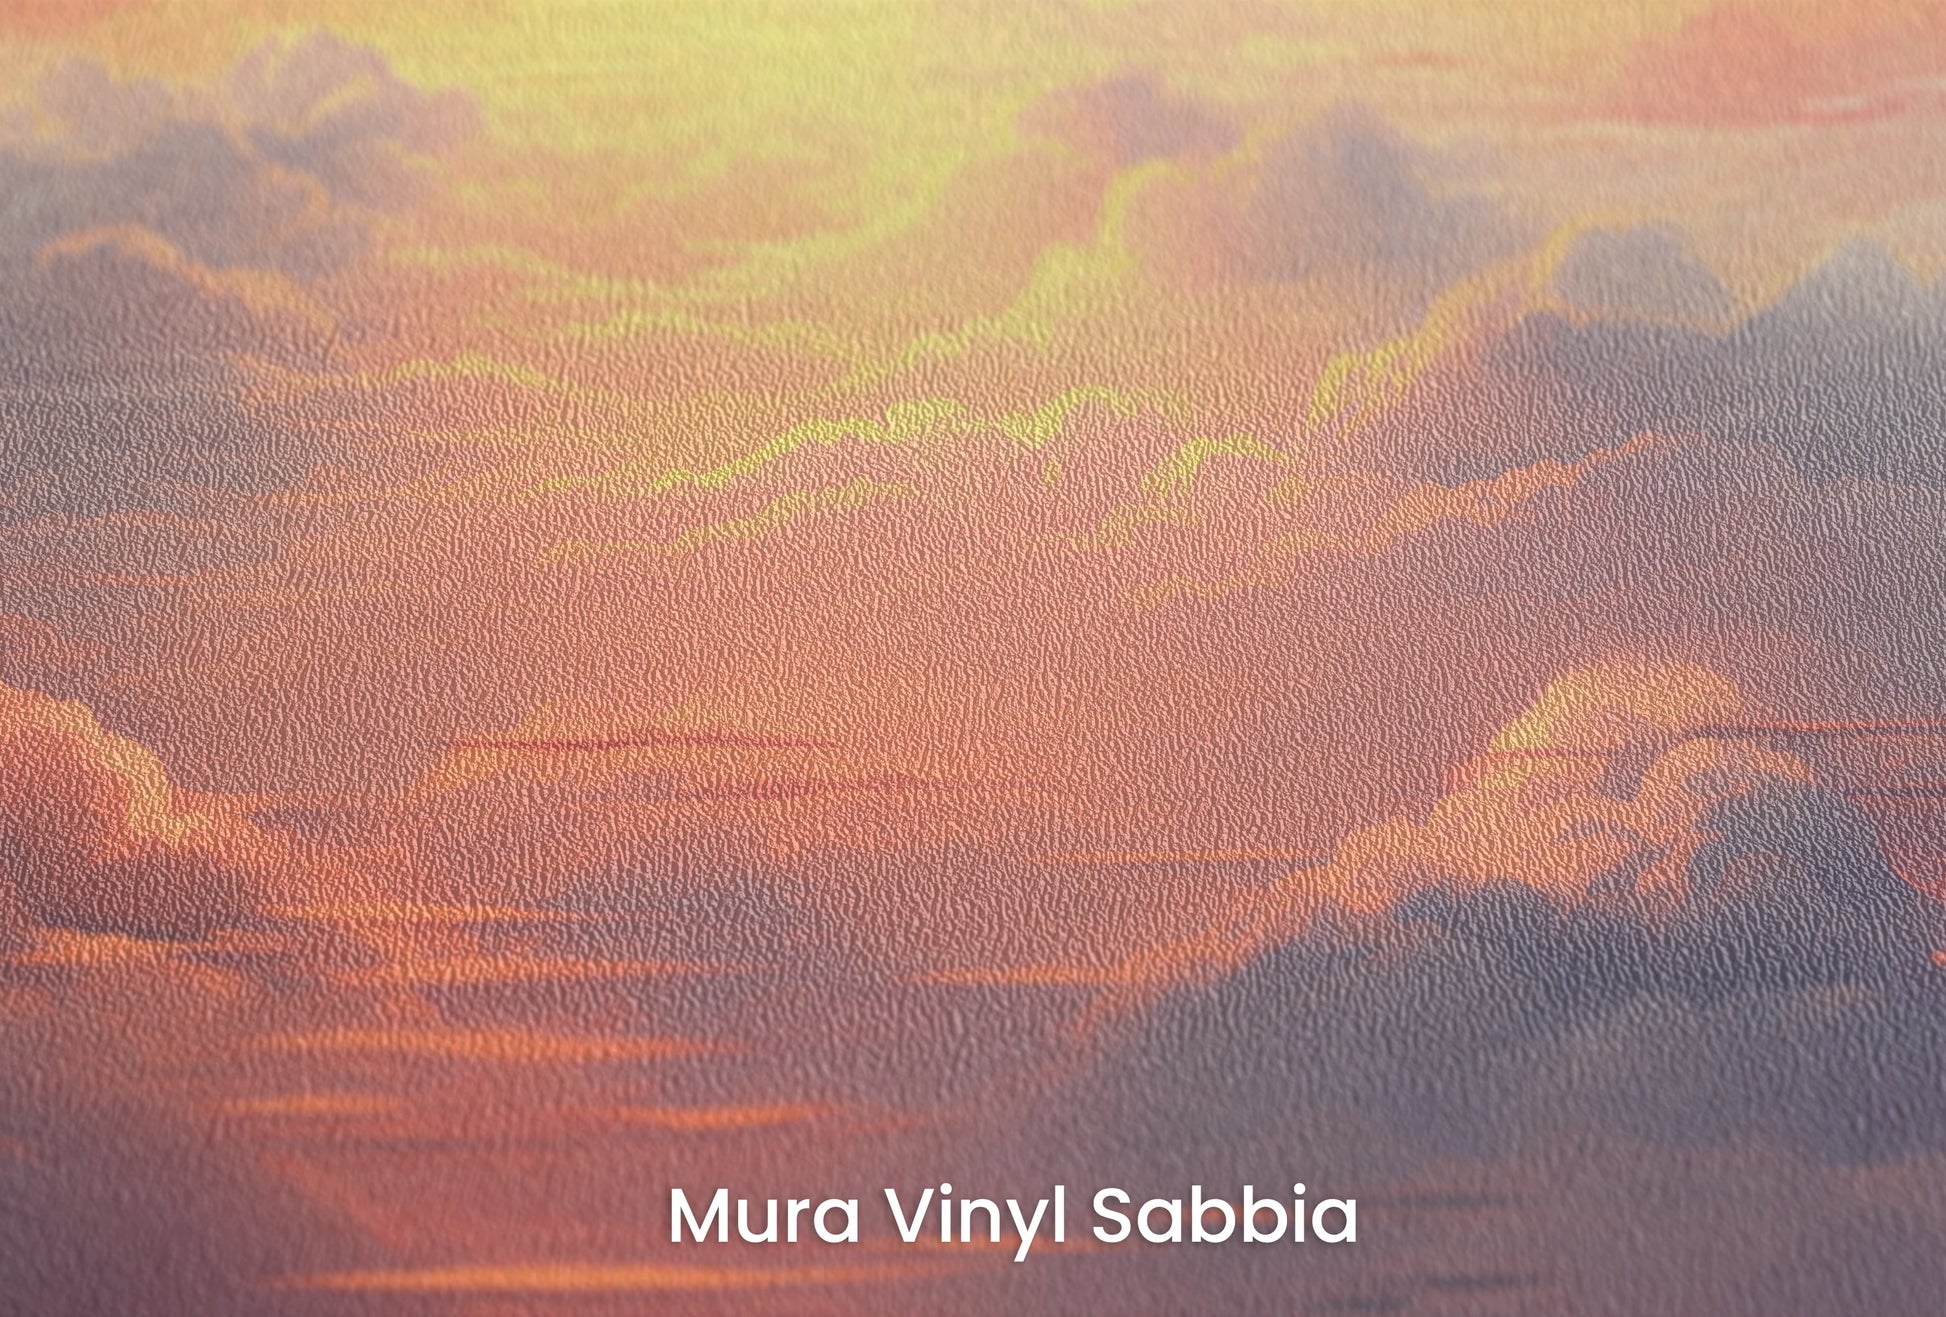 Zbliżenie na artystyczną fototapetę o nazwie Fiery Skyline #2 na podłożu Mura Vinyl Sabbia struktura grubego ziarna piasku.